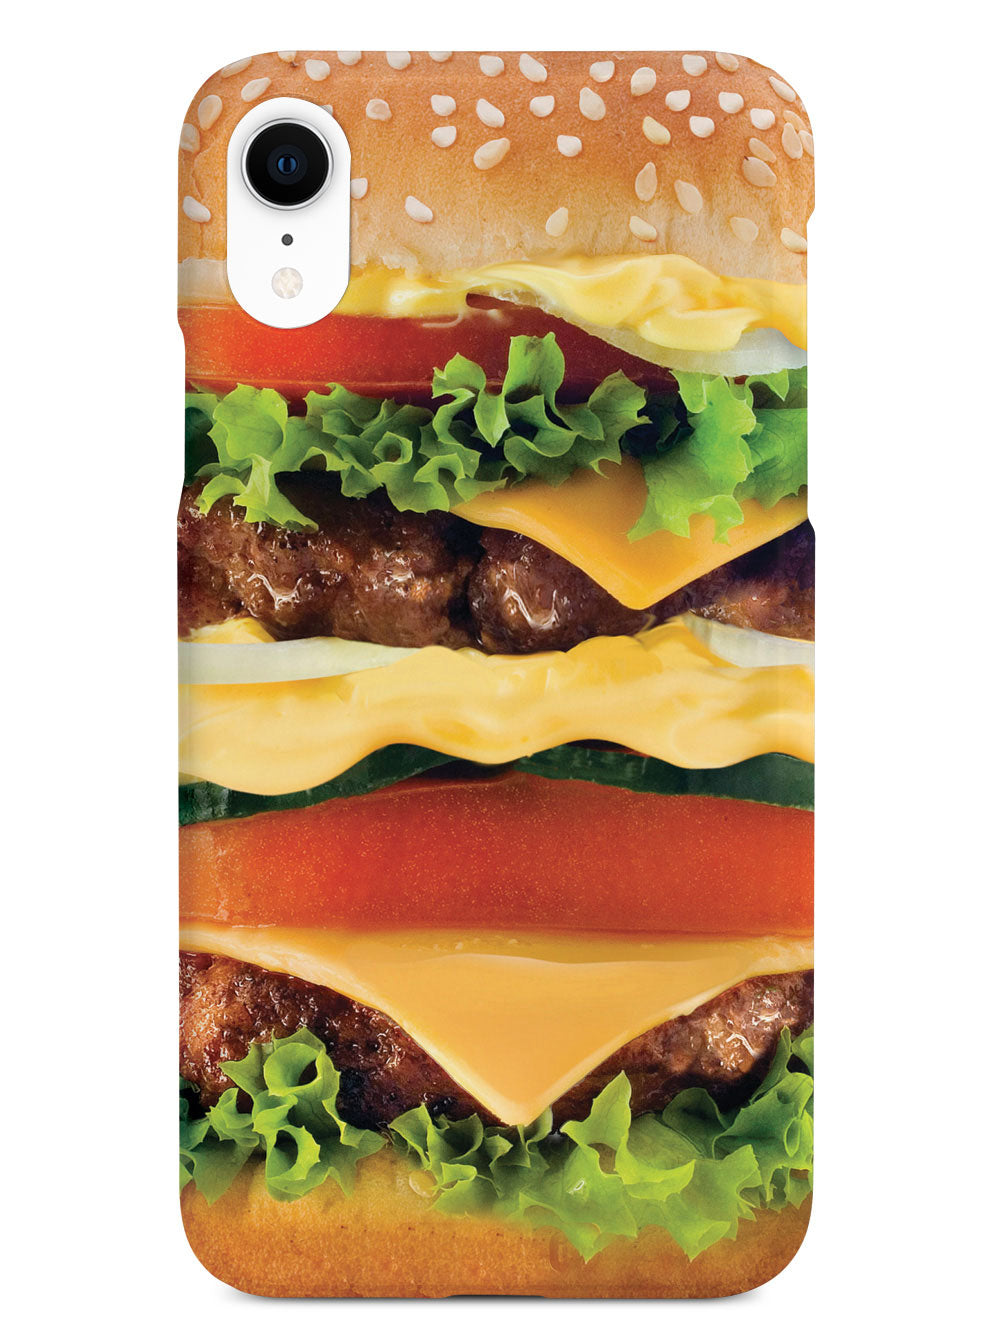 Cheeseburger Case